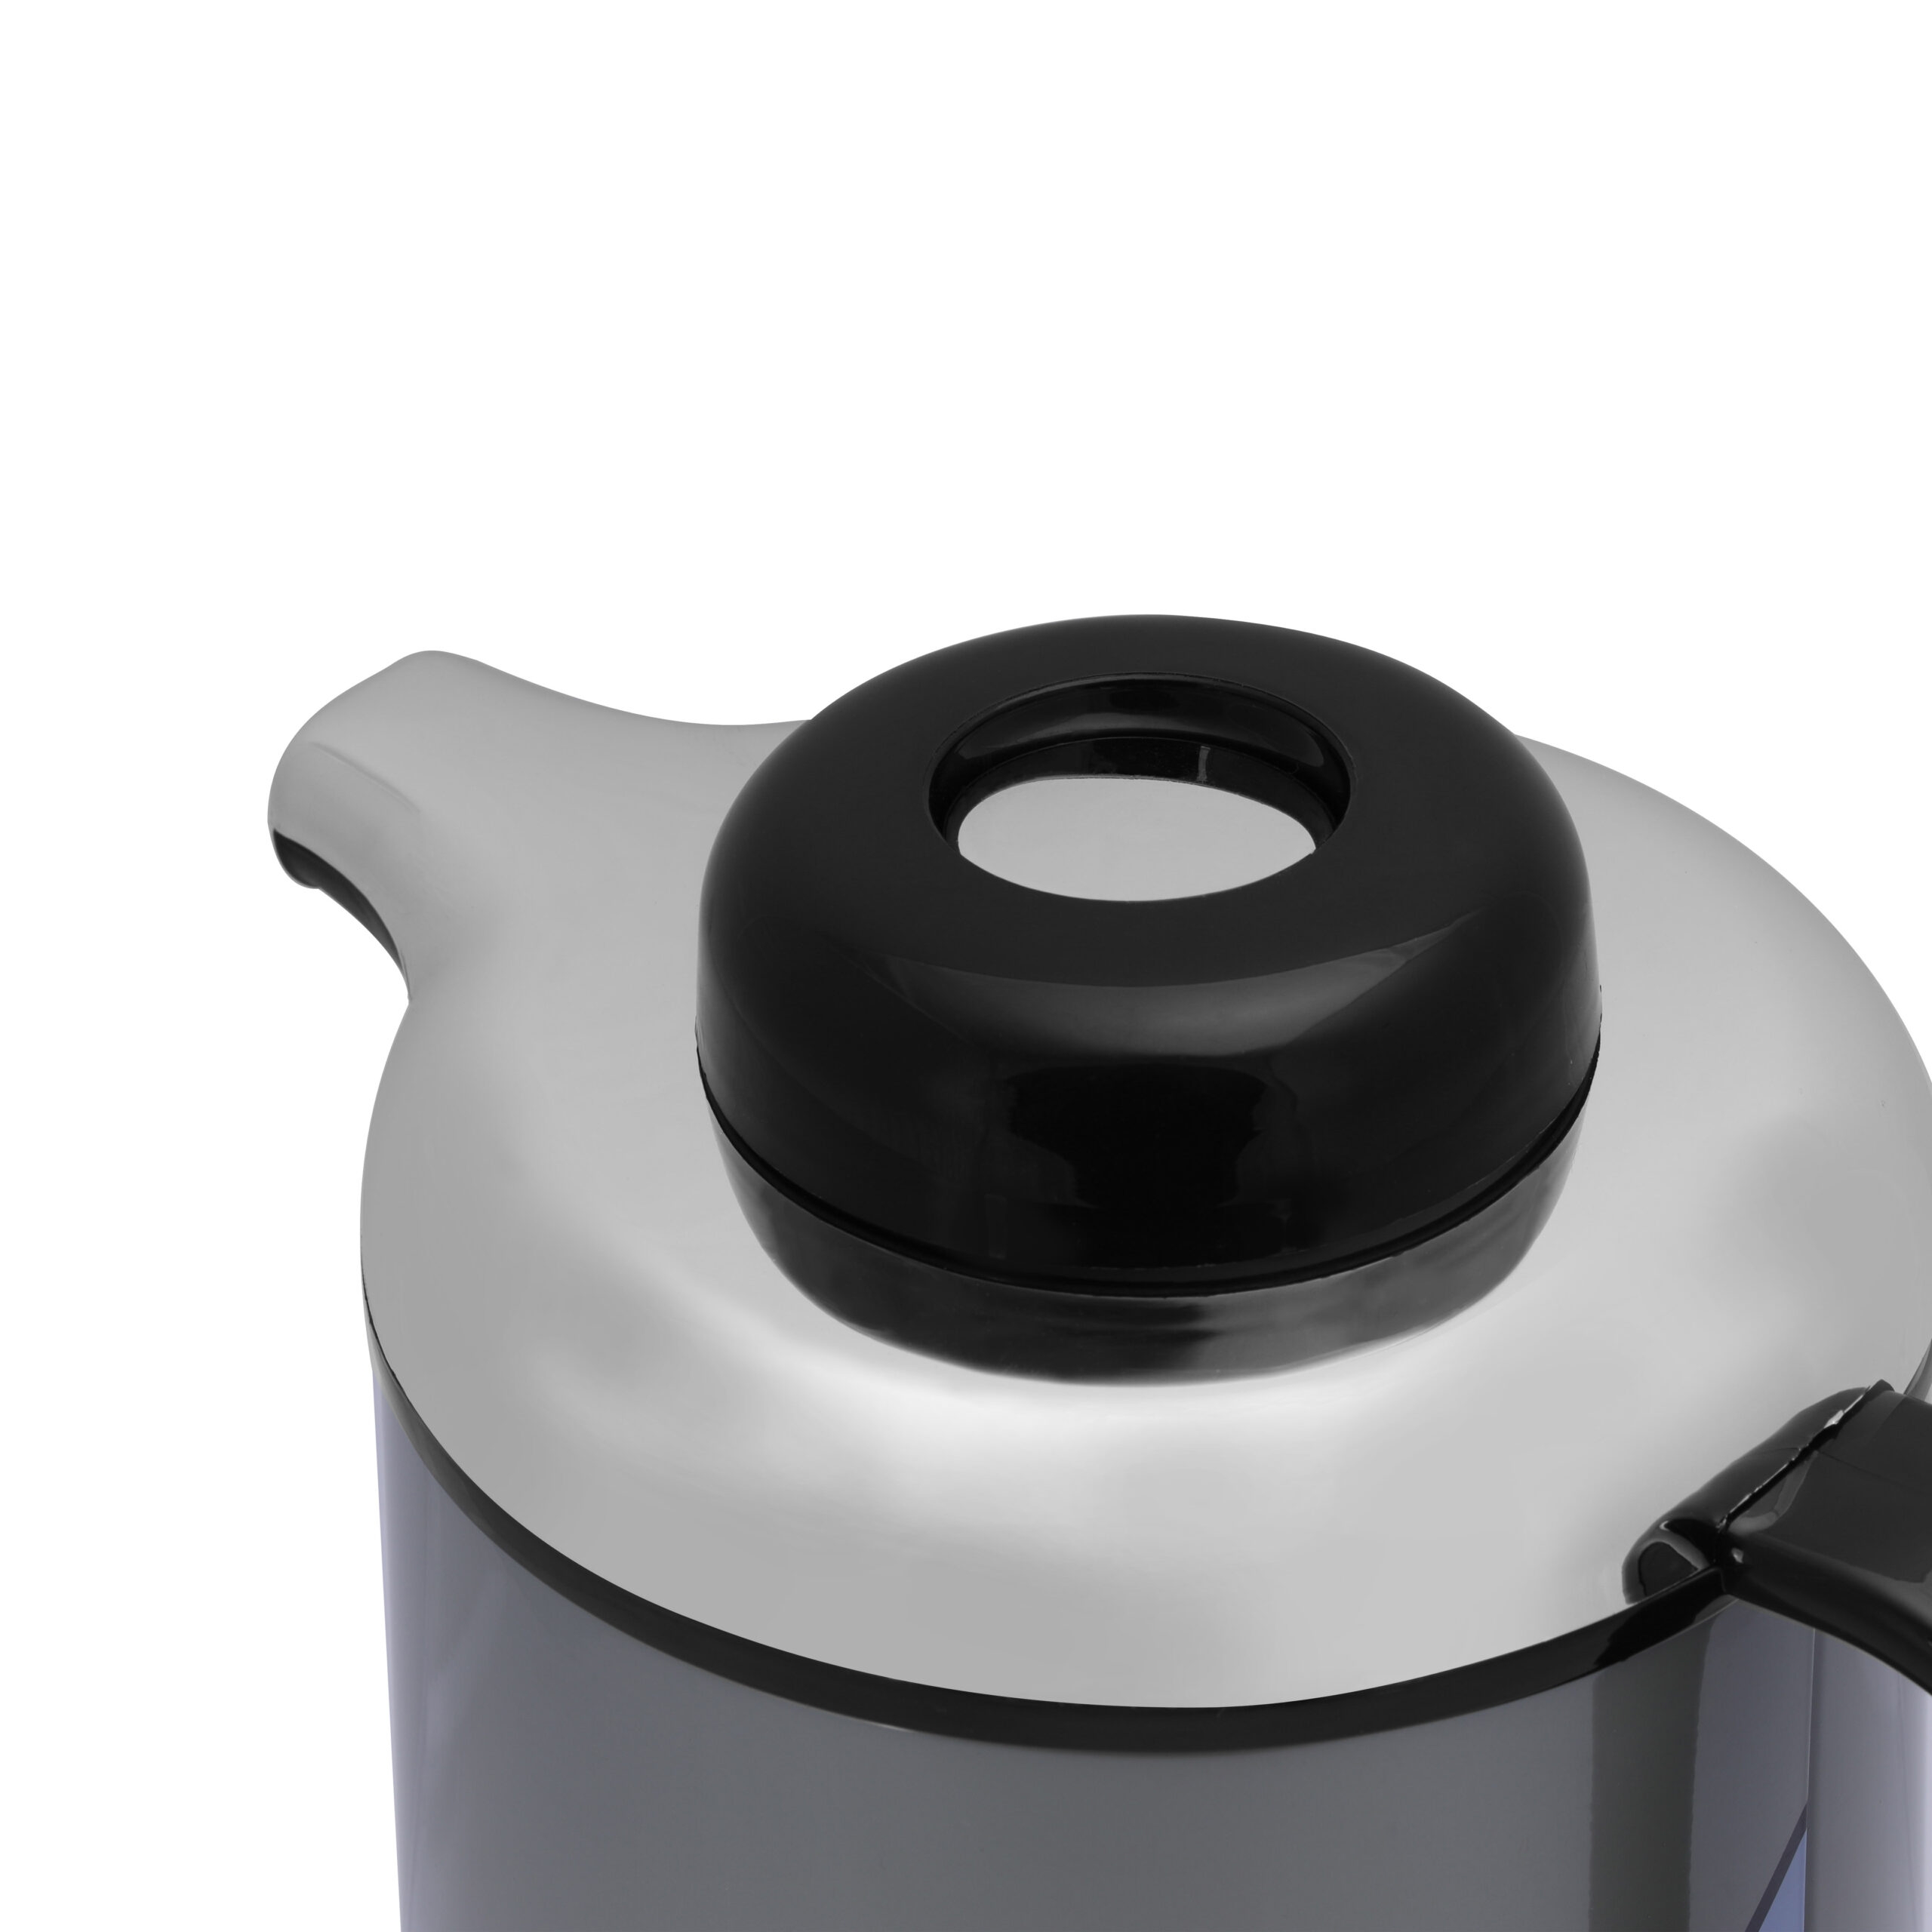 ترمس ماء 1.9 لتر - فضي و أزرق Royalford 1.9L Vacuum Flask